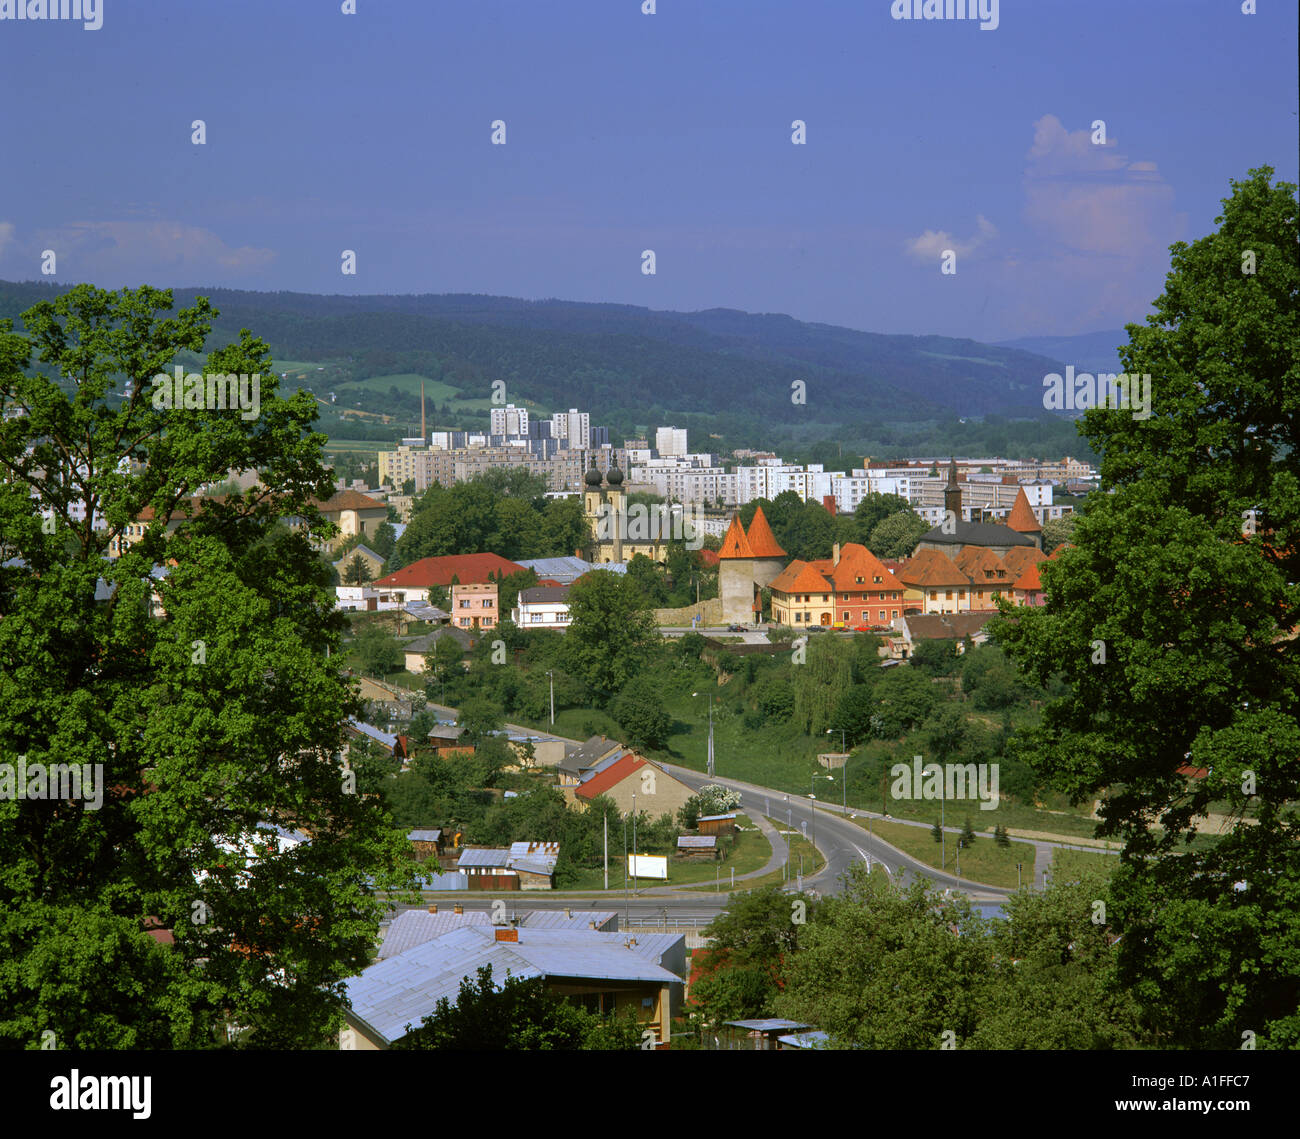 Le contraste de l'ancien et le nouveau bâtiment dans la ville de Bardejov Slovaquie G Hellier Banque D'Images